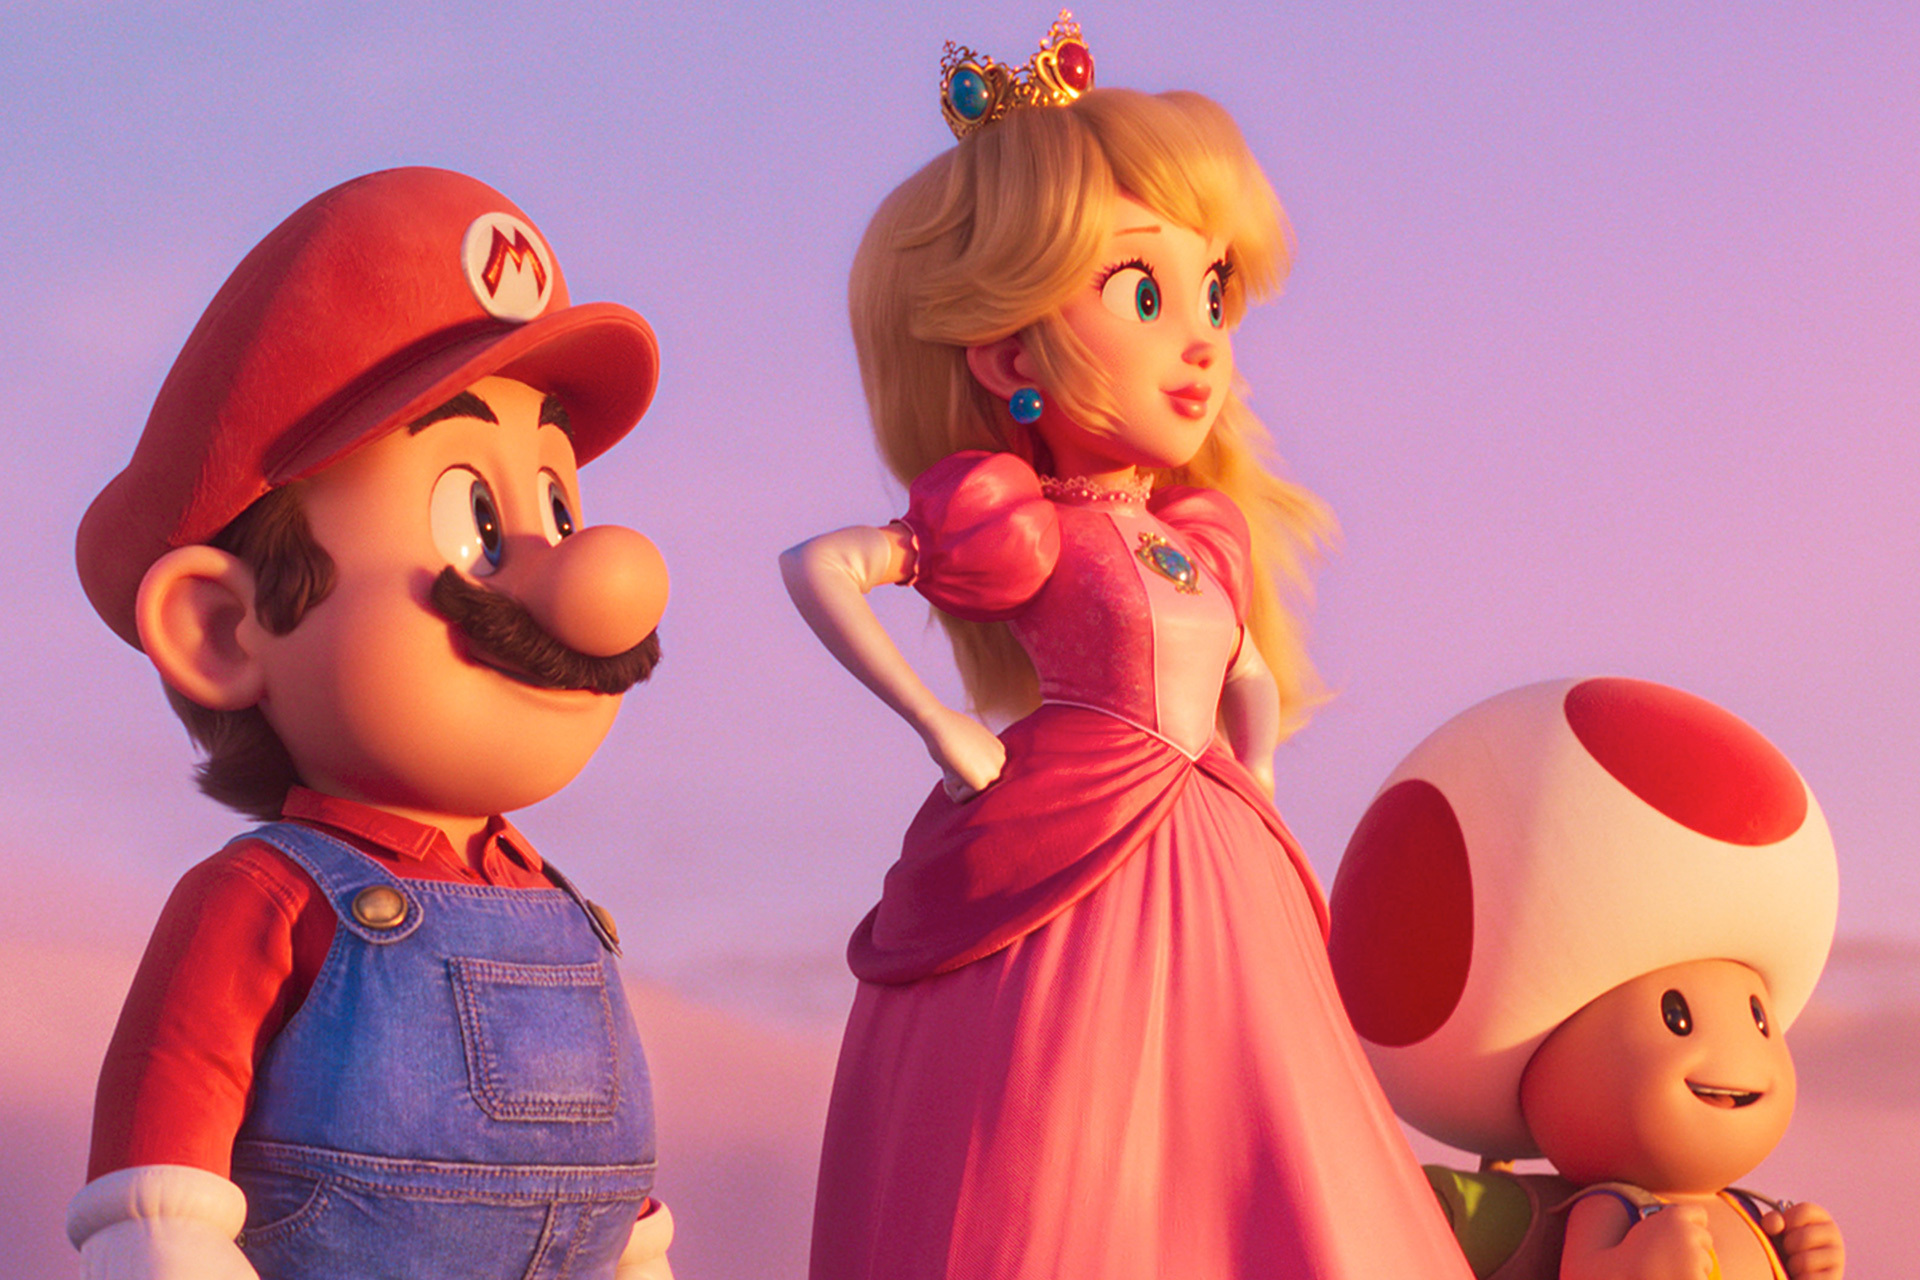 Stream The Super Mario Bros. Movie Aug 3